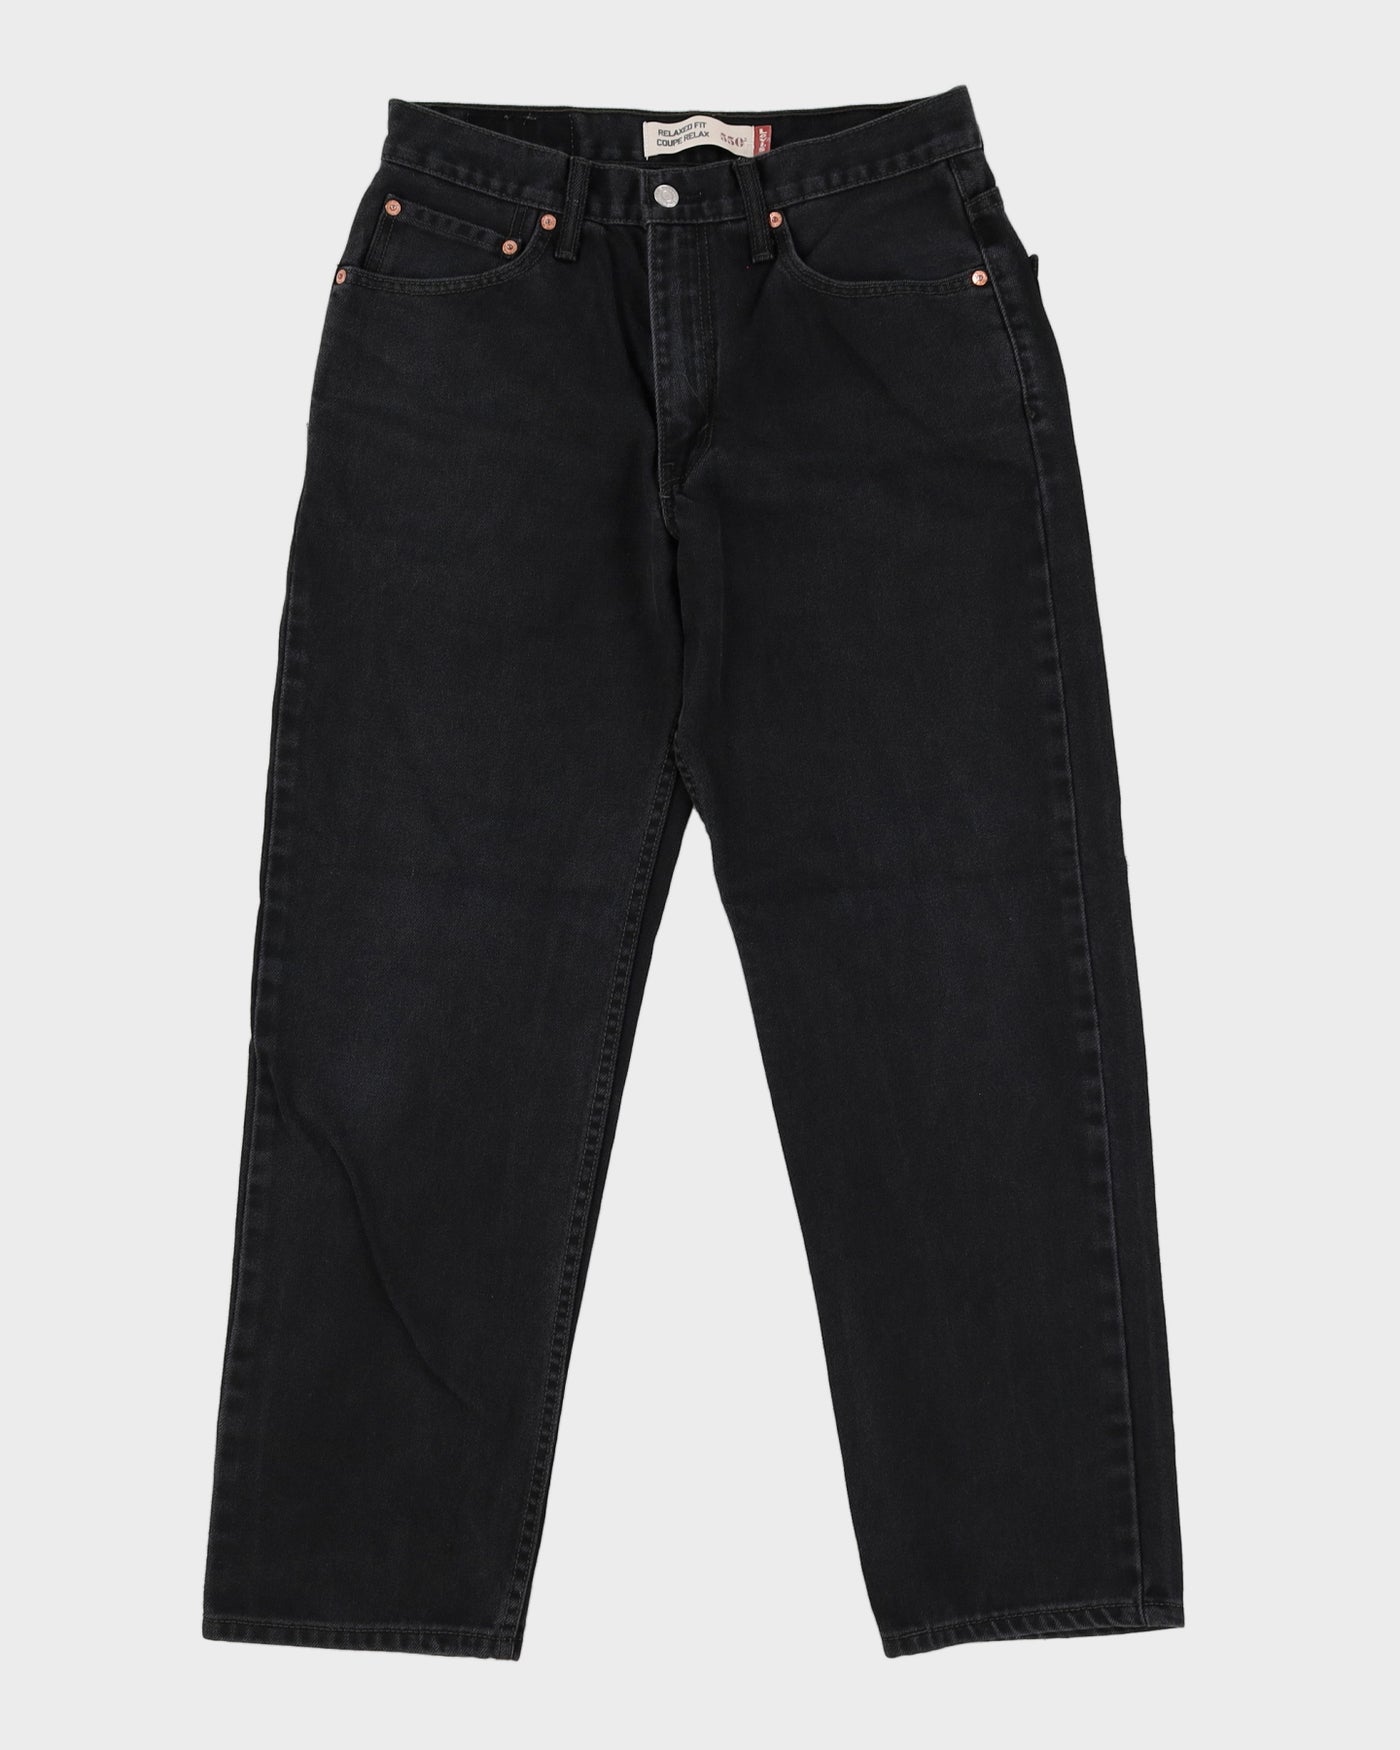 Levi's 501 Dark Wash Jeans - W31 L29